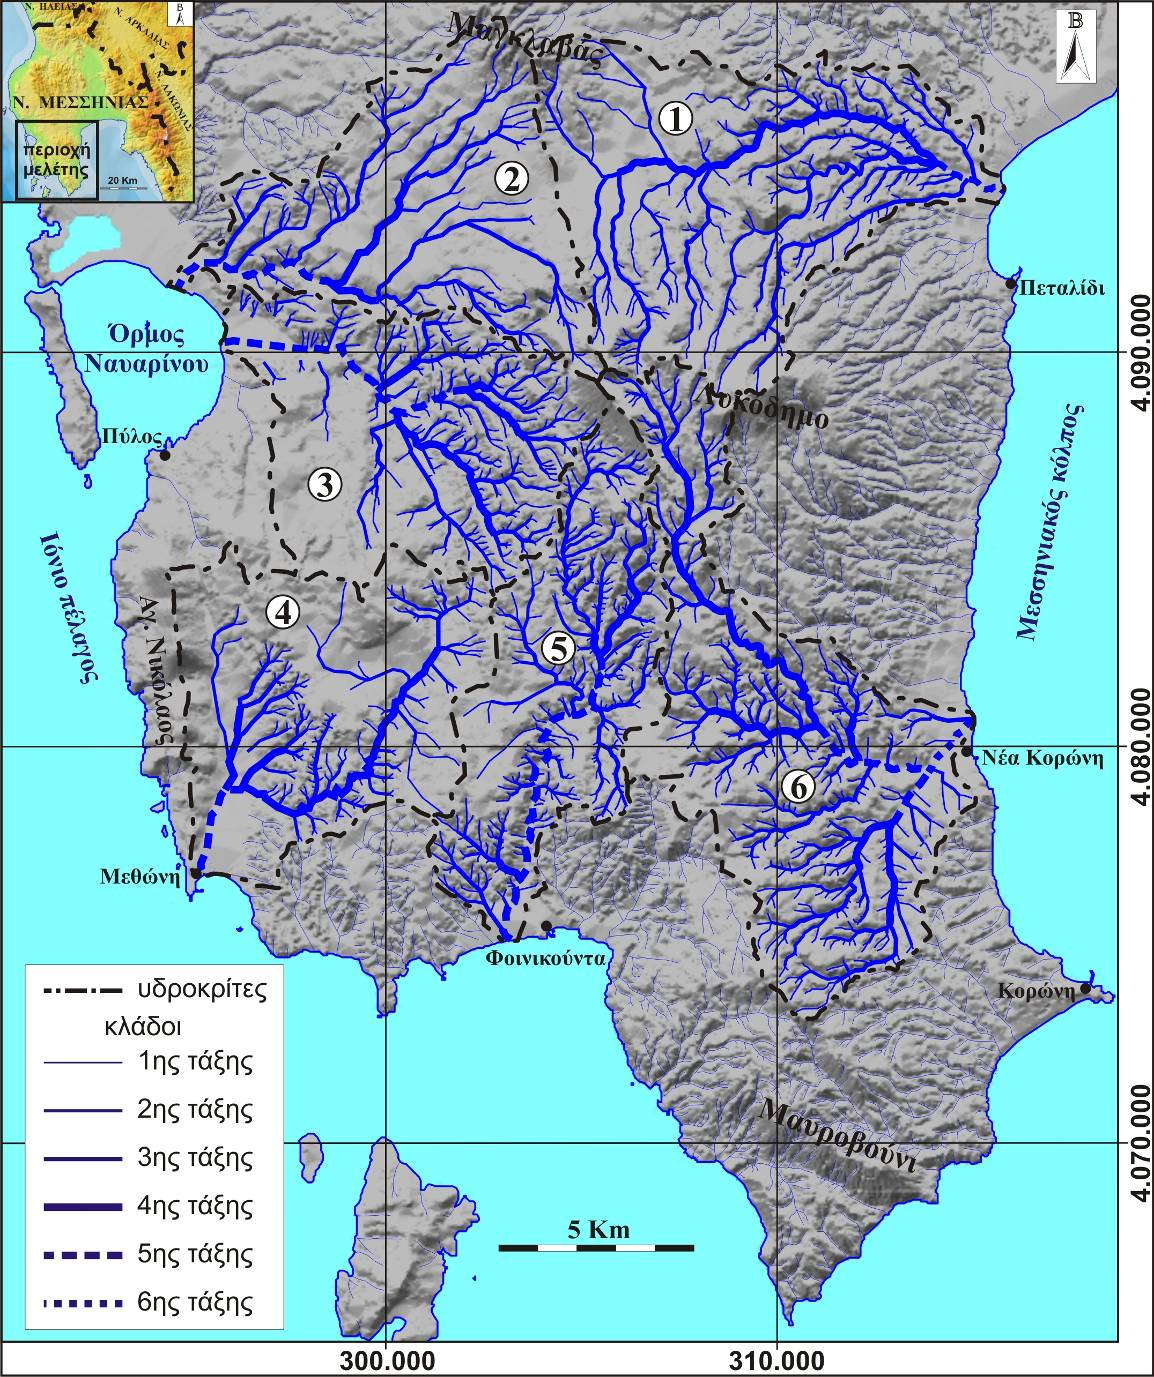 Εικ. 1. Η γεωγραφική θέση της περιοχής μελέτης και τα υδρογραφικά της χερσονήσου της Πυλίας που μελετήθηκαν. Οι αριθμοί αντιστοιχούν στις λεκάνες απορροής των εξής ποταμών χειμάρρων: 1. Καλόρρεμα, 2.